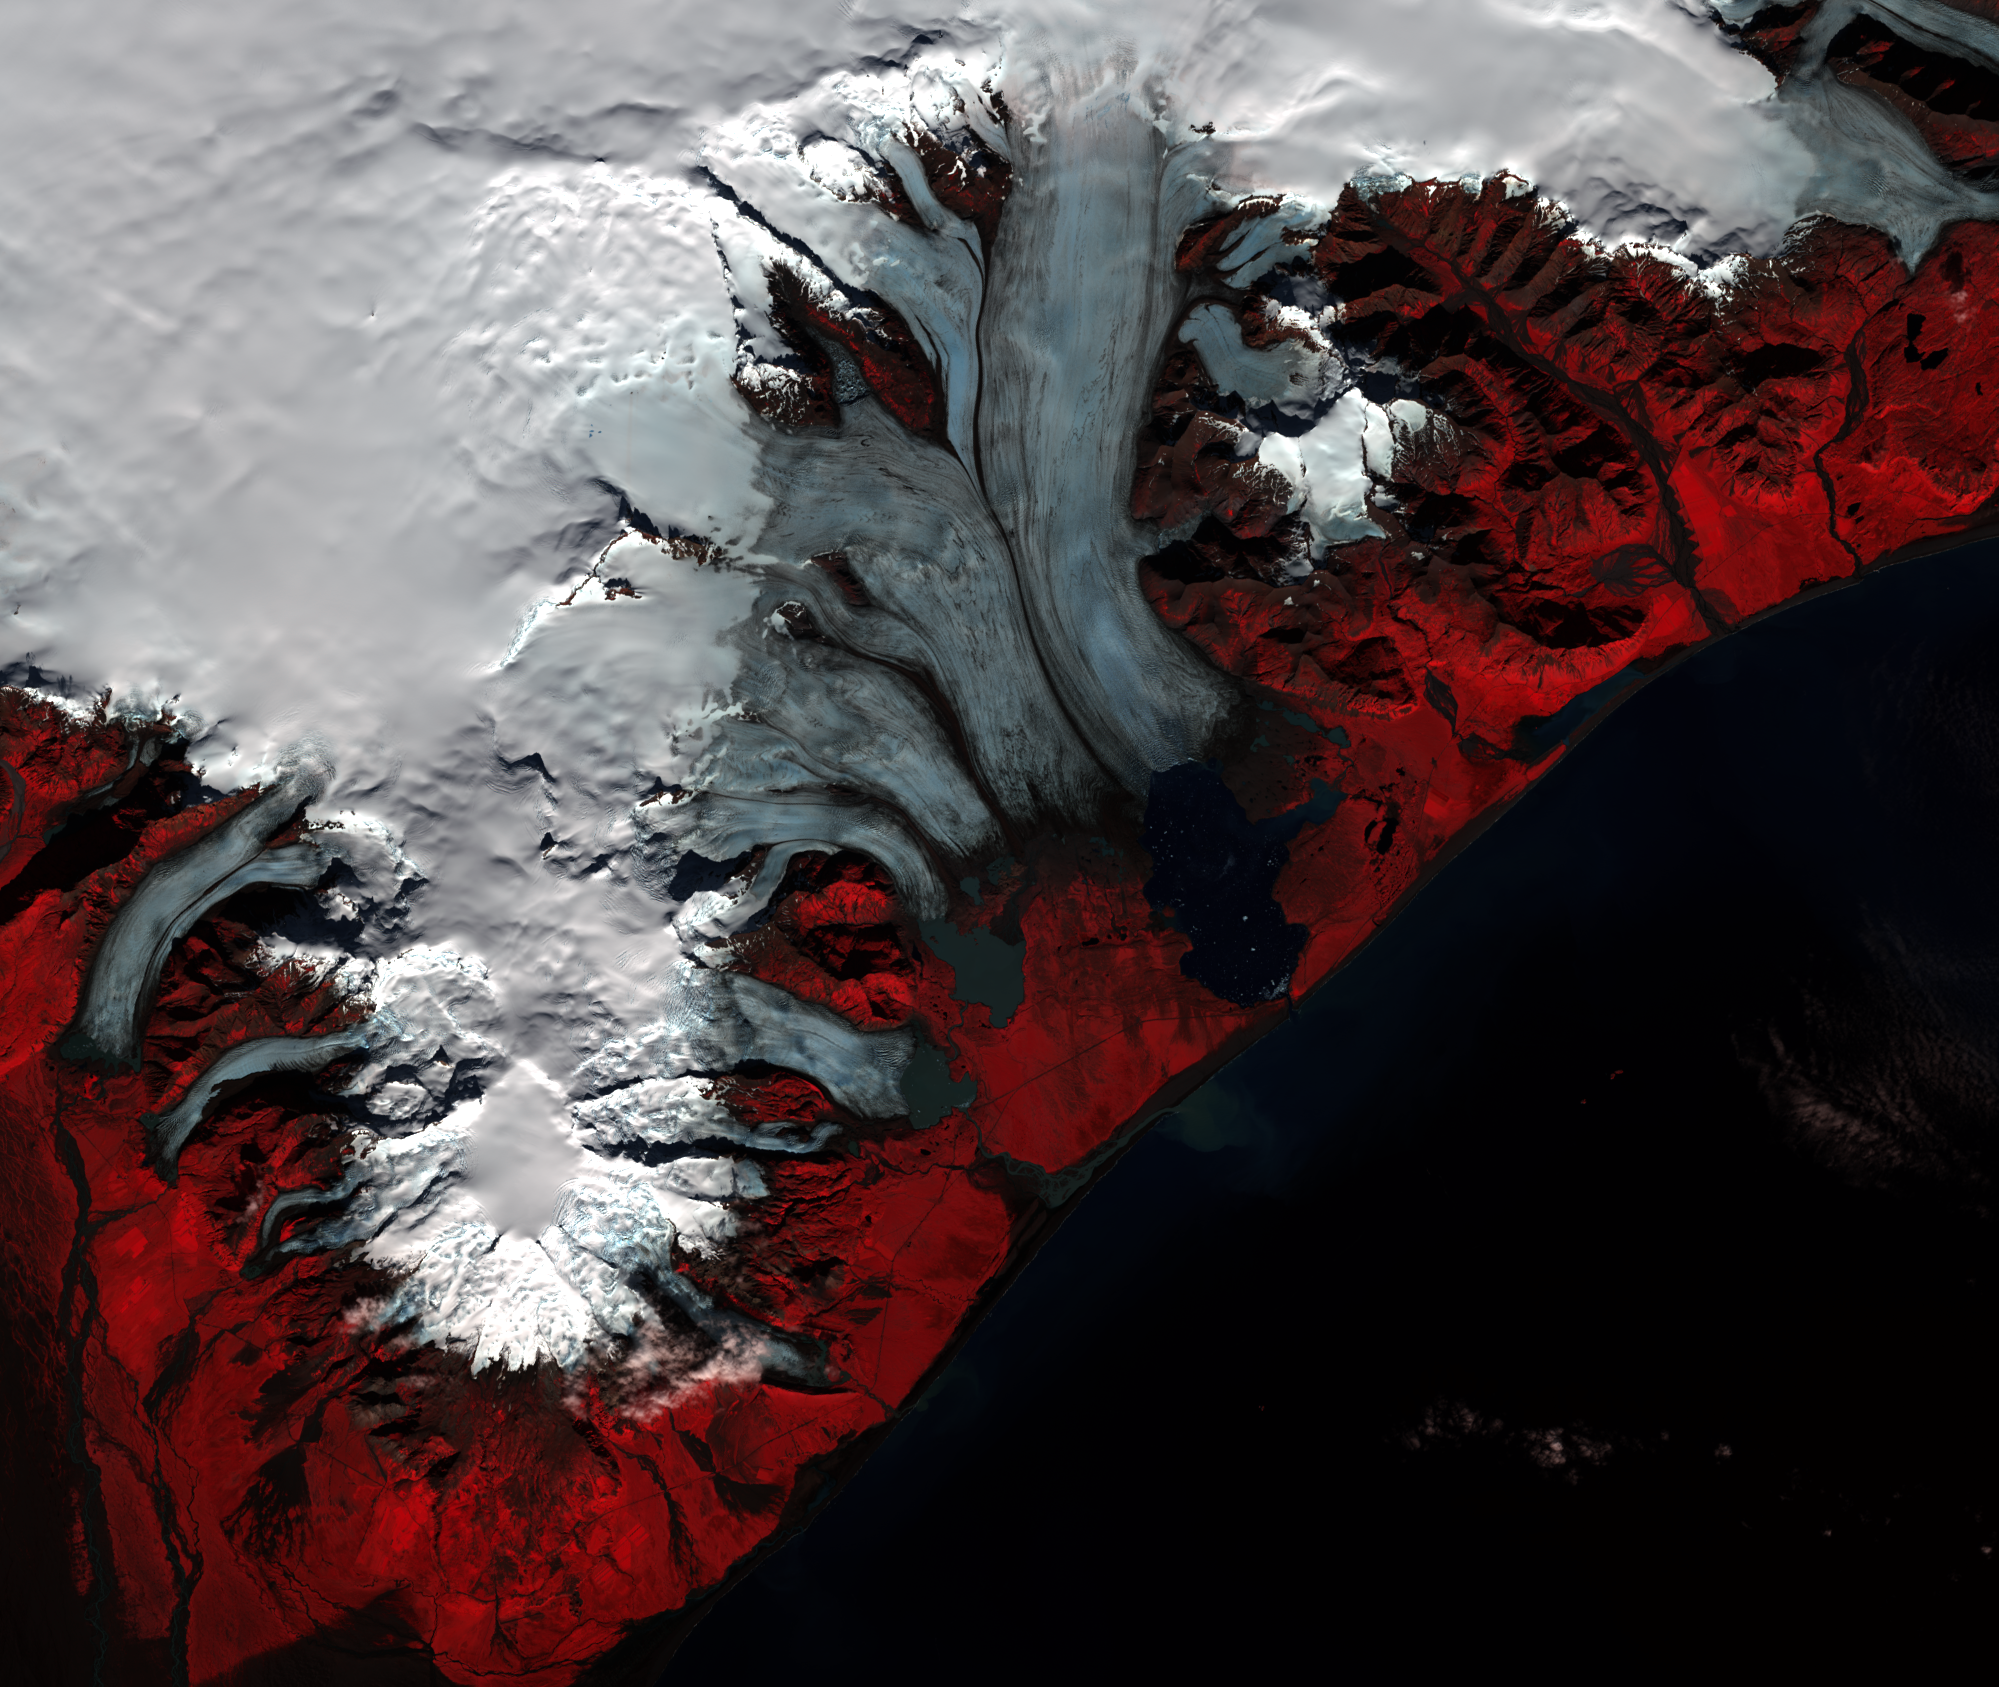 Sep. 25, 2015, Landsat 8 (path/row 217/15) — Breiðamerkurjökull, Iceland